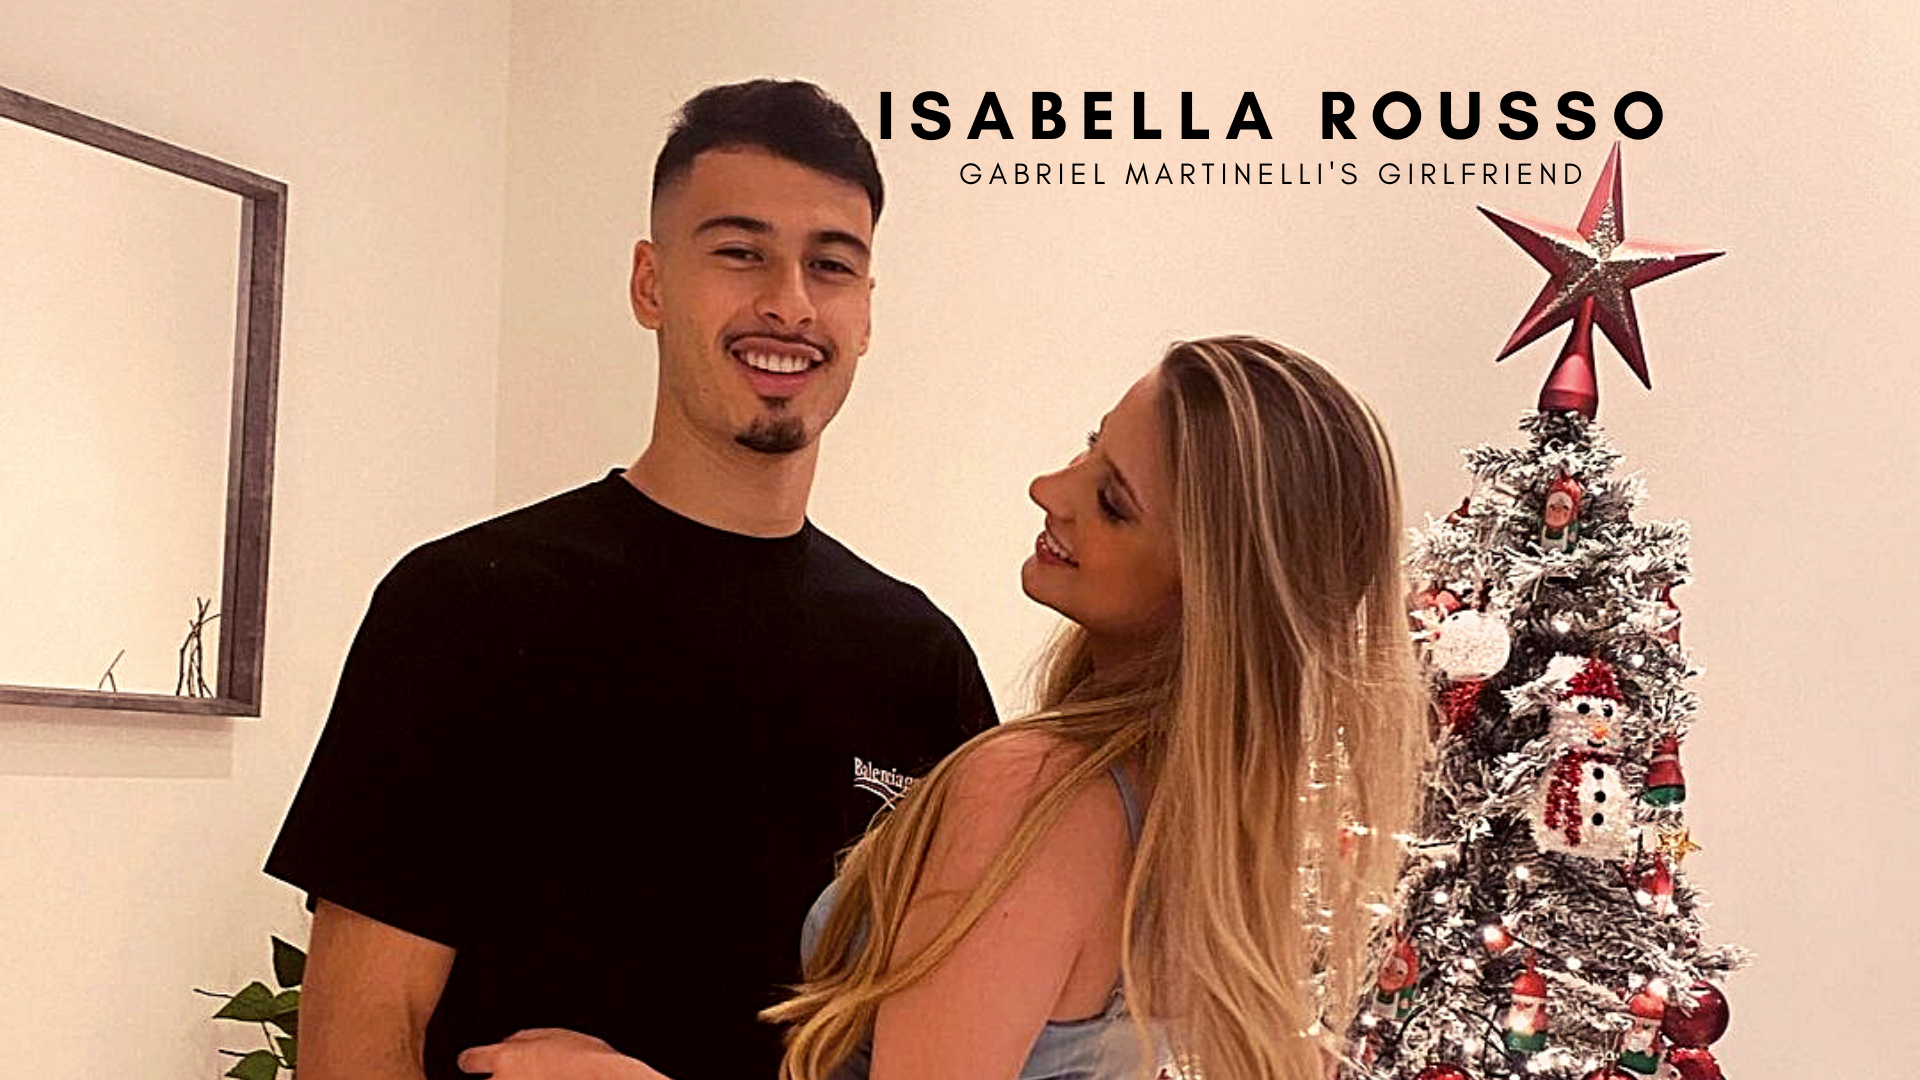 Gabriel Martinelli with girlfriend Isabella Rousso. (Credit: Instagram)